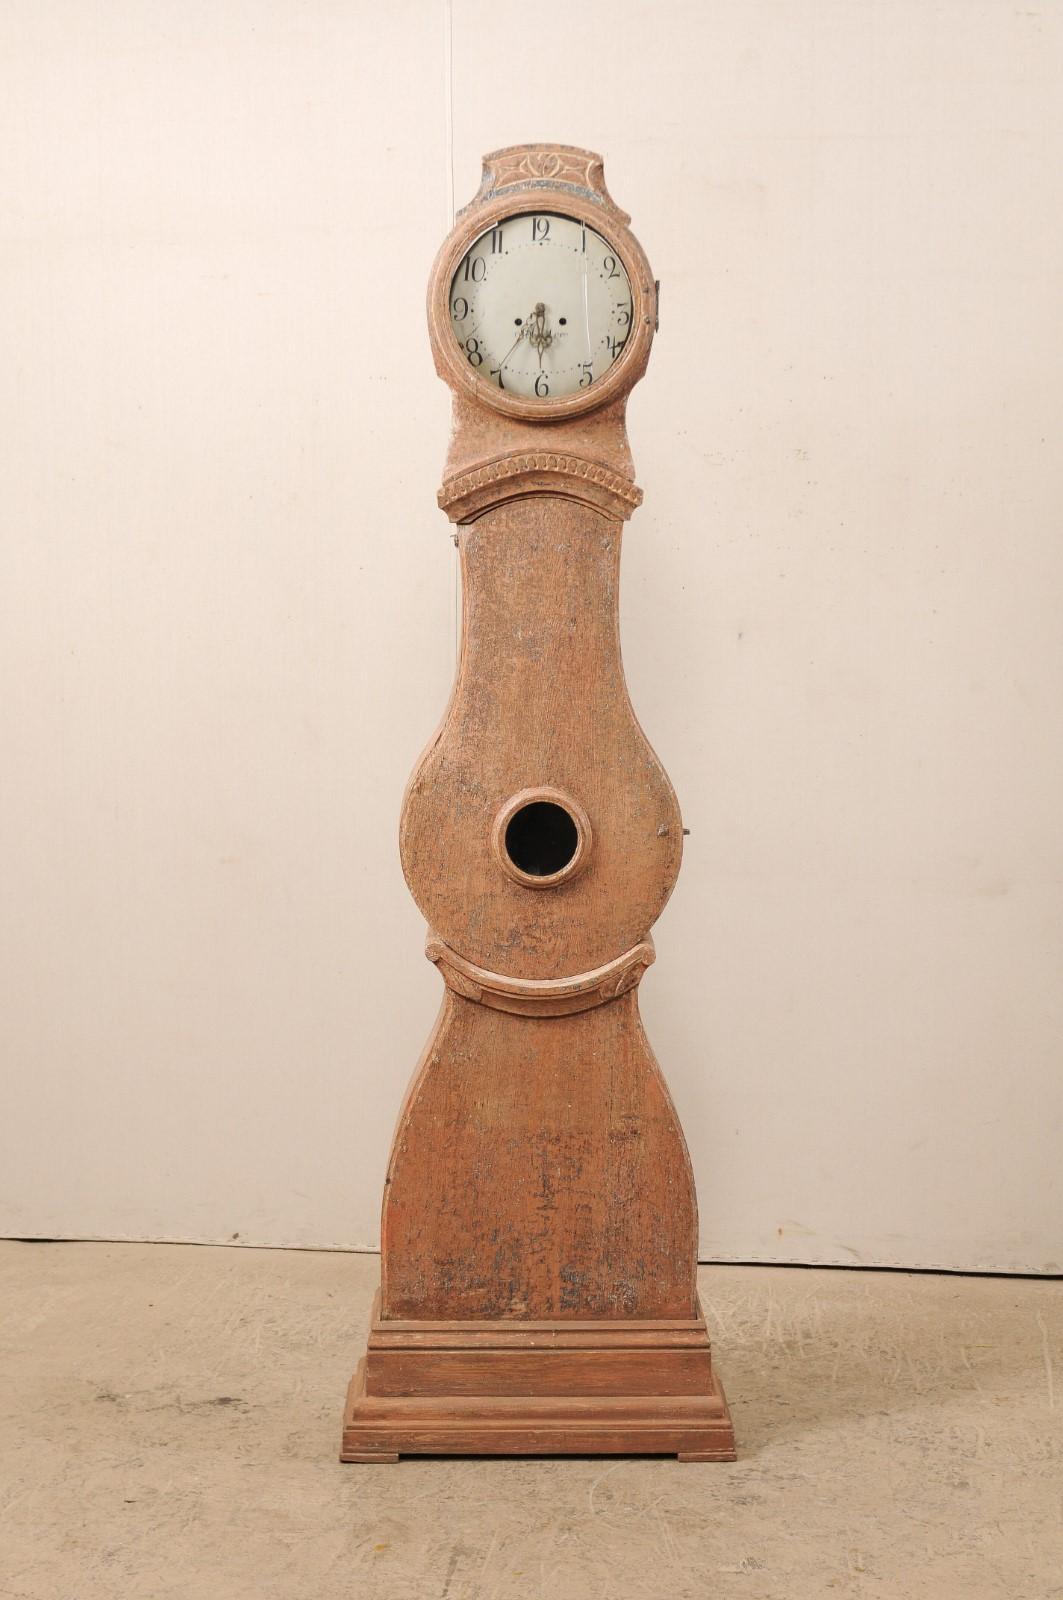 Pendule suédoise à long boîtier du XIXe siècle, avec finition grattée à sec. Cette horloge ancienne de Suède, datant des années 1820, est surmontée d'une crête subtilement surélevée et sculptée, au sommet d'une tête de forme arrondie. Une moulure